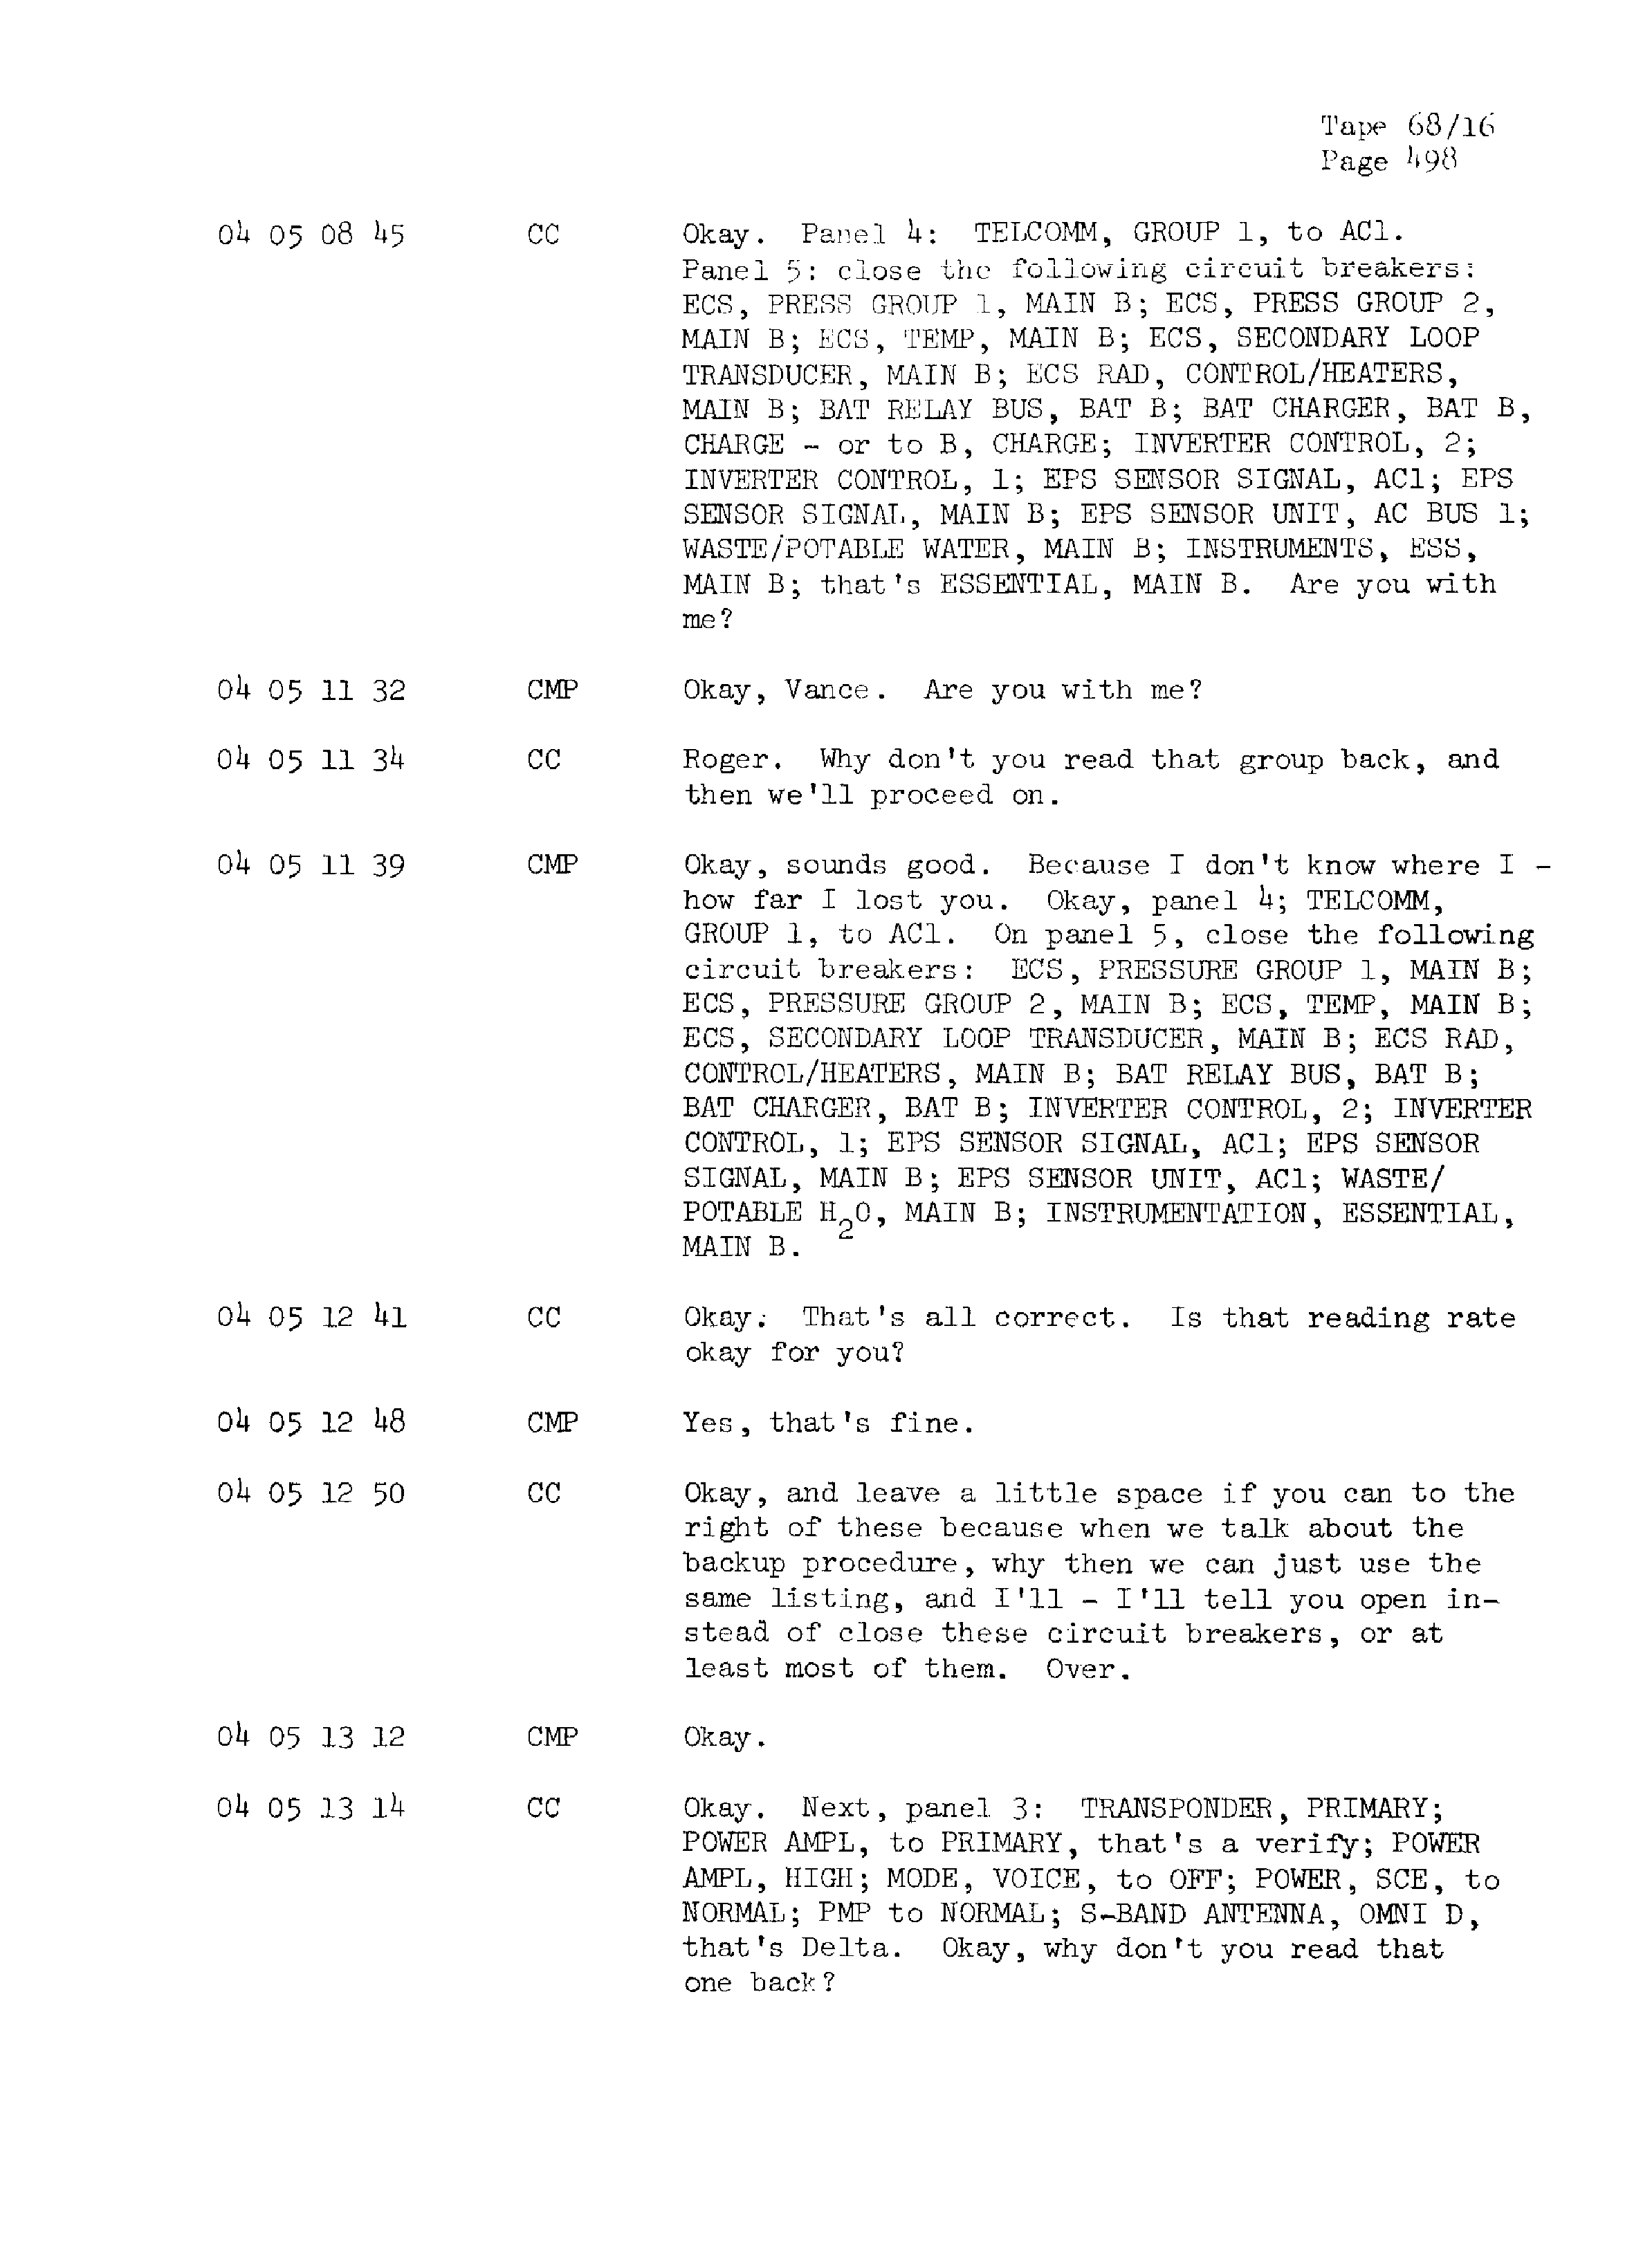 Page 505 of Apollo 13’s original transcript